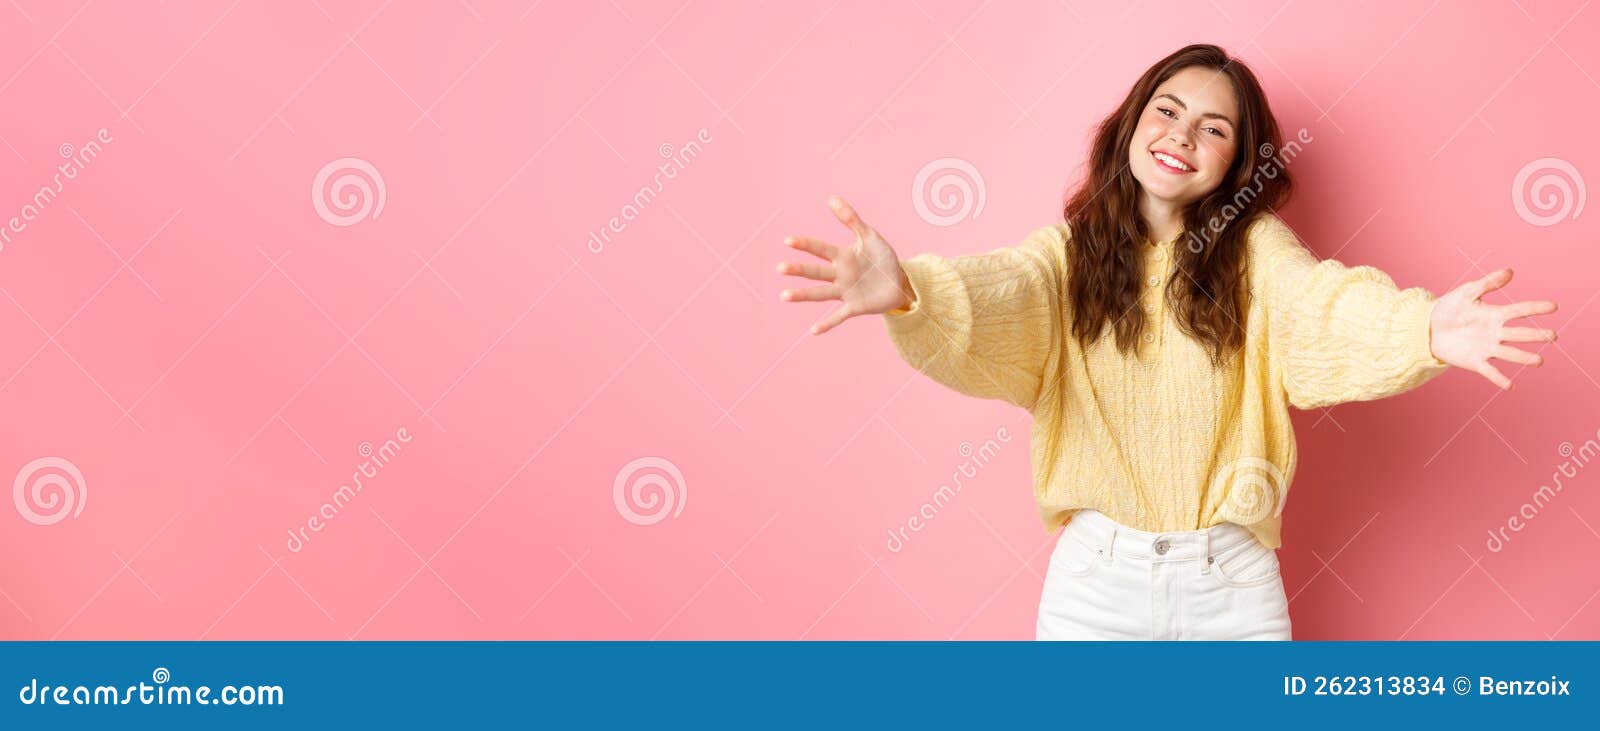 Young Beautiful Woman Reaching Hands Forward To Hug You Smiling